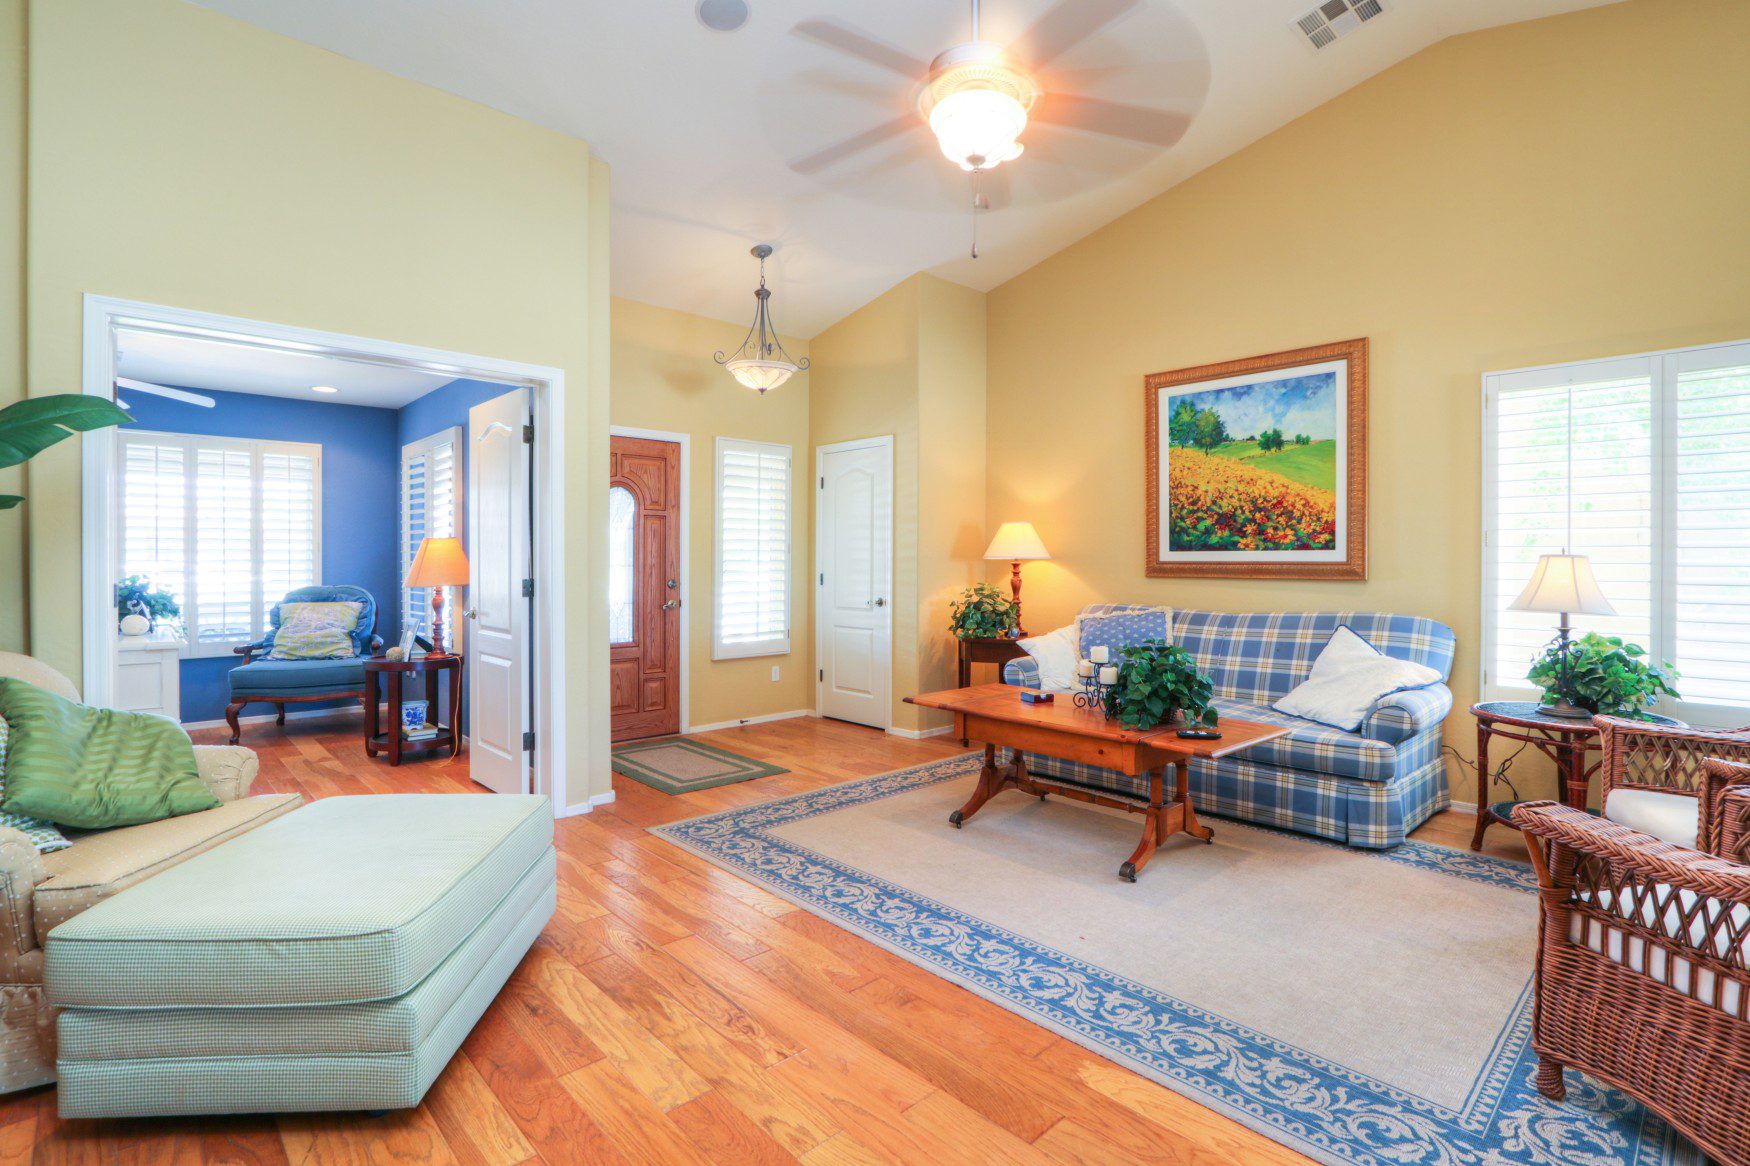 Living Room, Hardwood Floors, Custom Paint